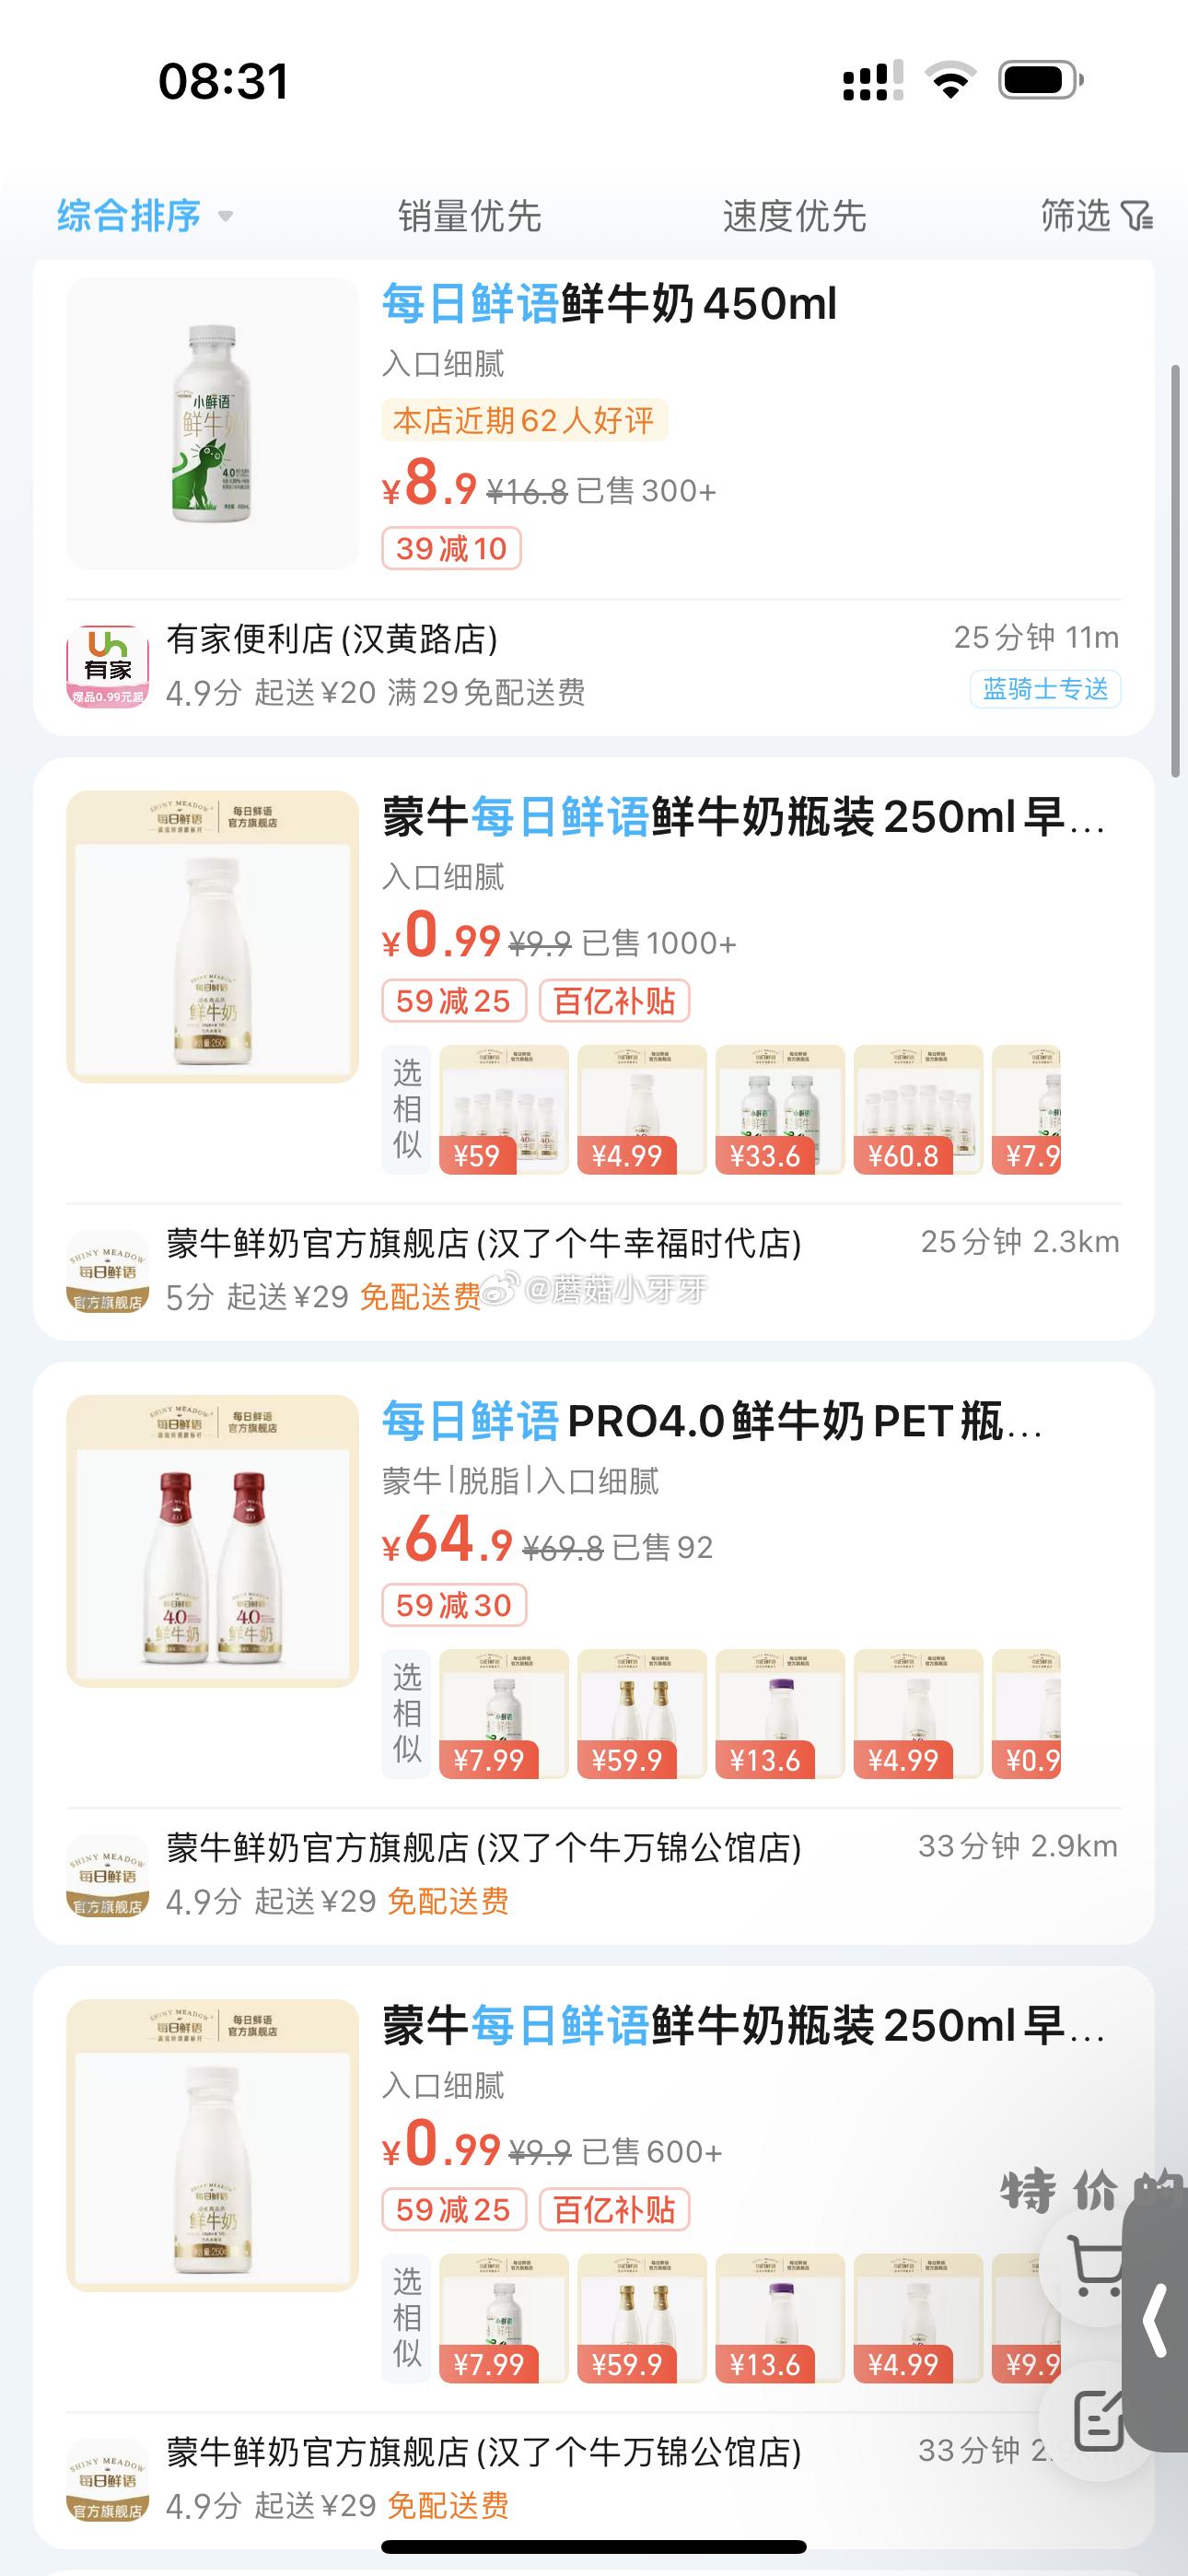 饿了么 反馈 坐标武汉 app搜“每日鲜语” 59-25满减 叠加部分商品首件特价 - 特价的